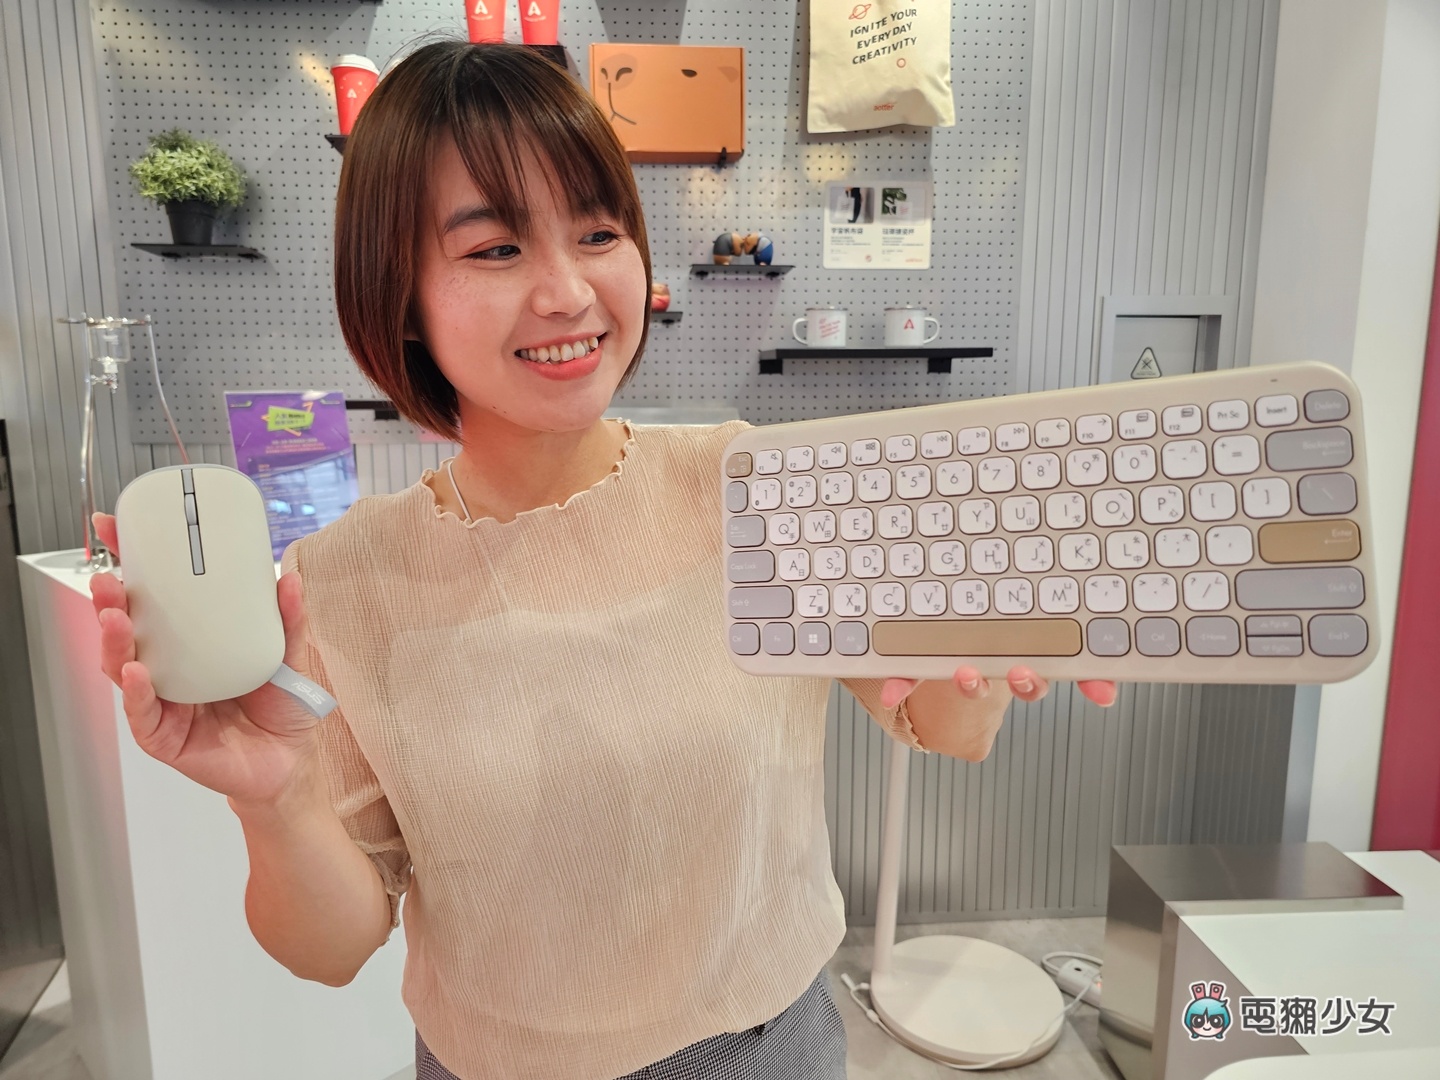 開箱｜糖粉系無線鍵盤 KW100、無線滑鼠 MD100：ASUS Marshmallow 系列溫柔配色與設計小巧思